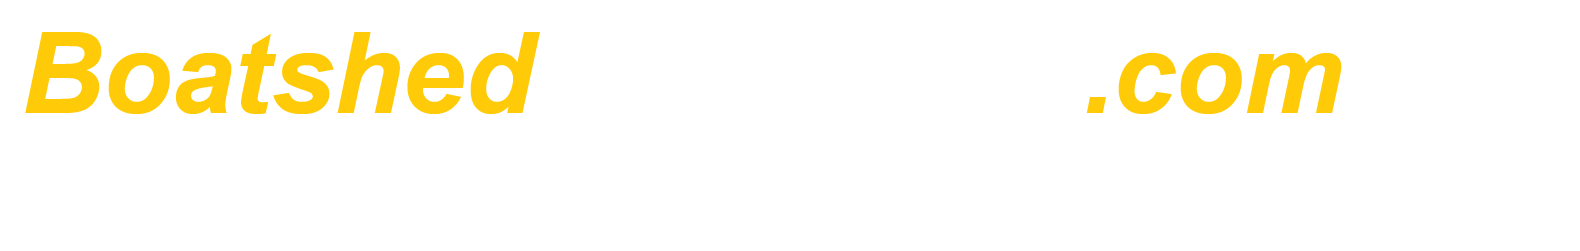 BoatshedStMaarten.com - International Yacht Brokers